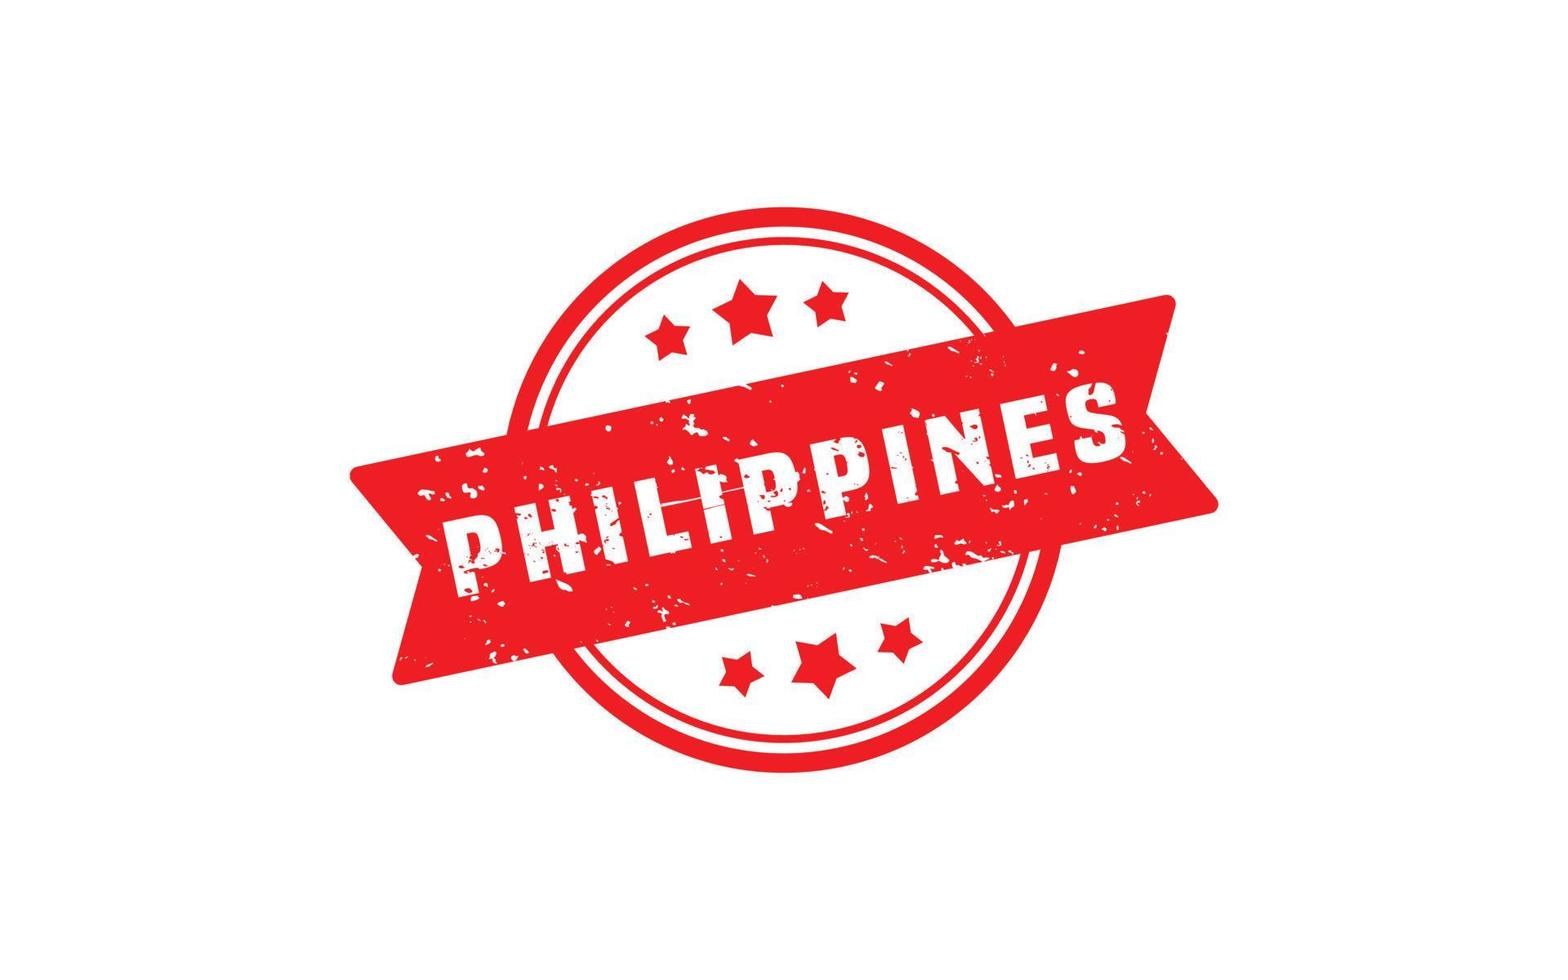 Filippijnen postzegel rubber met grunge stijl Aan wit achtergrond vector